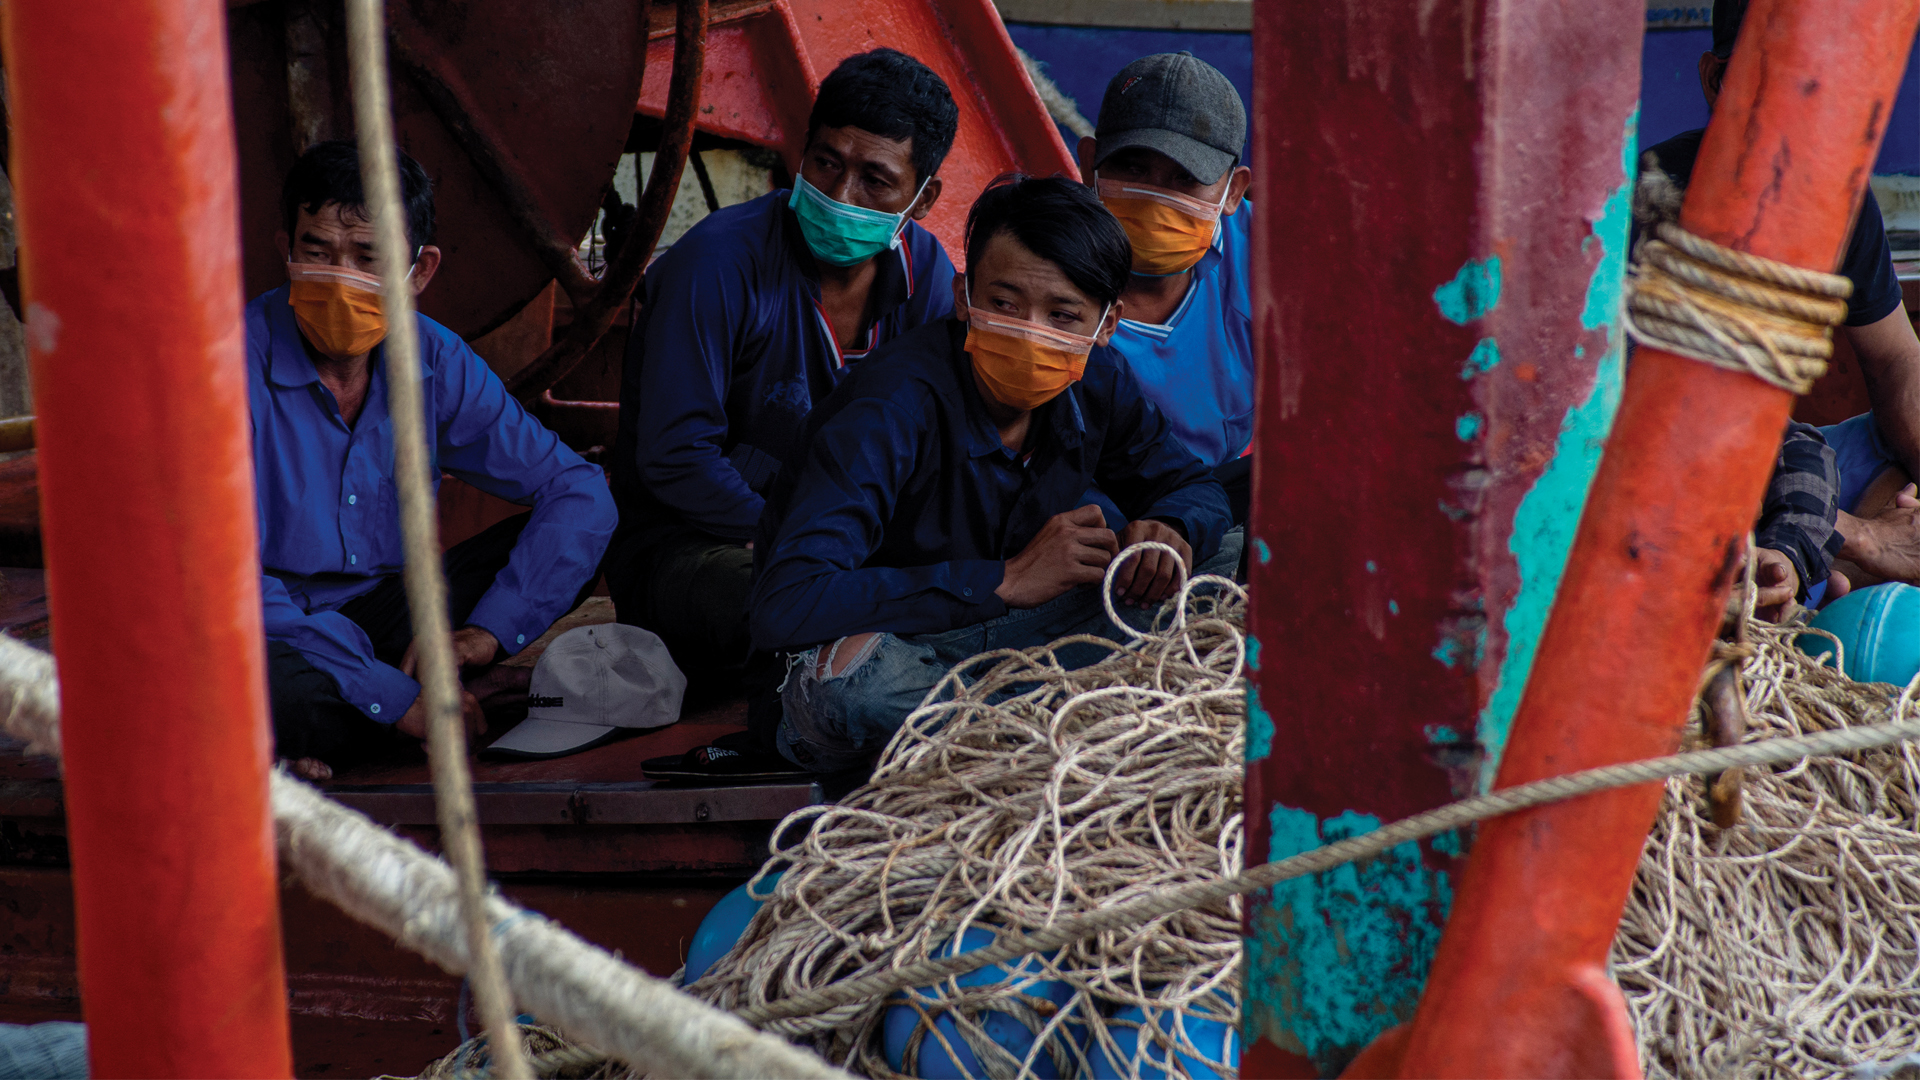 El pescador o persona que ha sido víctima del trabajo forzado ha pasado por distintas embarcaciones y, en ocasiones, ocurre que los dejan en un barco pesquero y luego lo trasladan a otro (AFP)